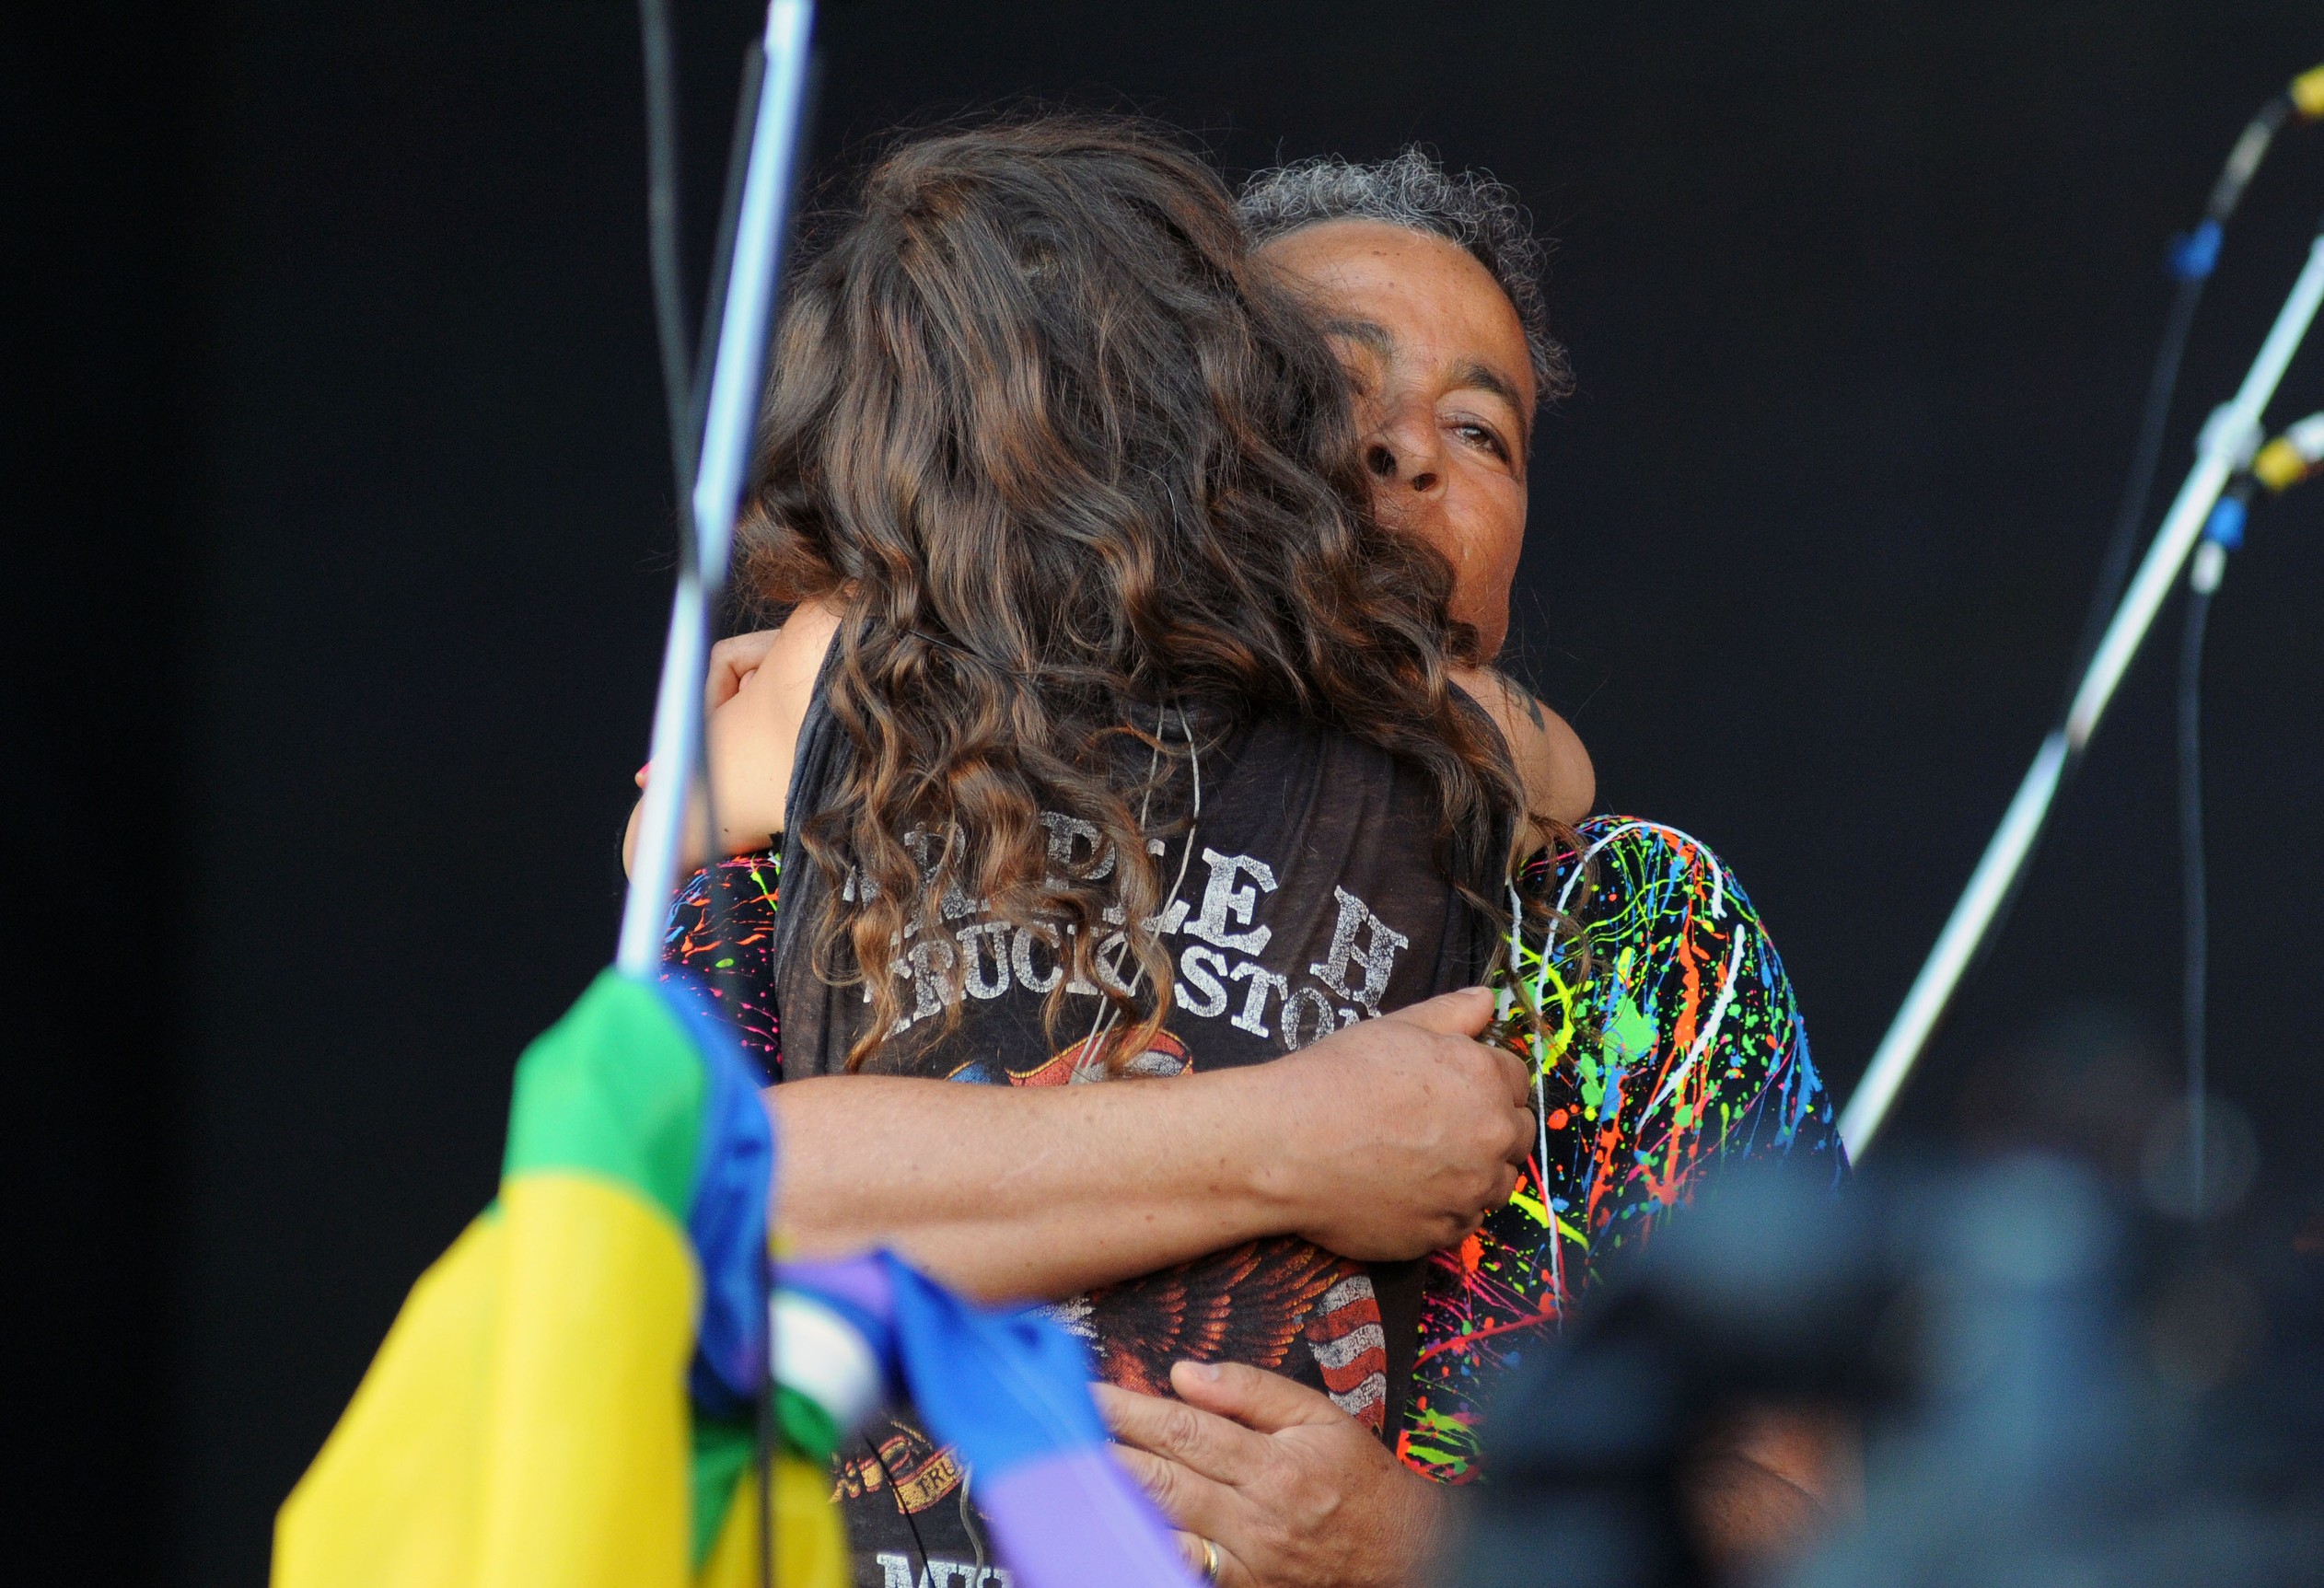 Ana Cañas recebe Hyldon durante show no Palco Sunset no Rock in Rio 2017 (Foto: Alexandre Durão/G1)